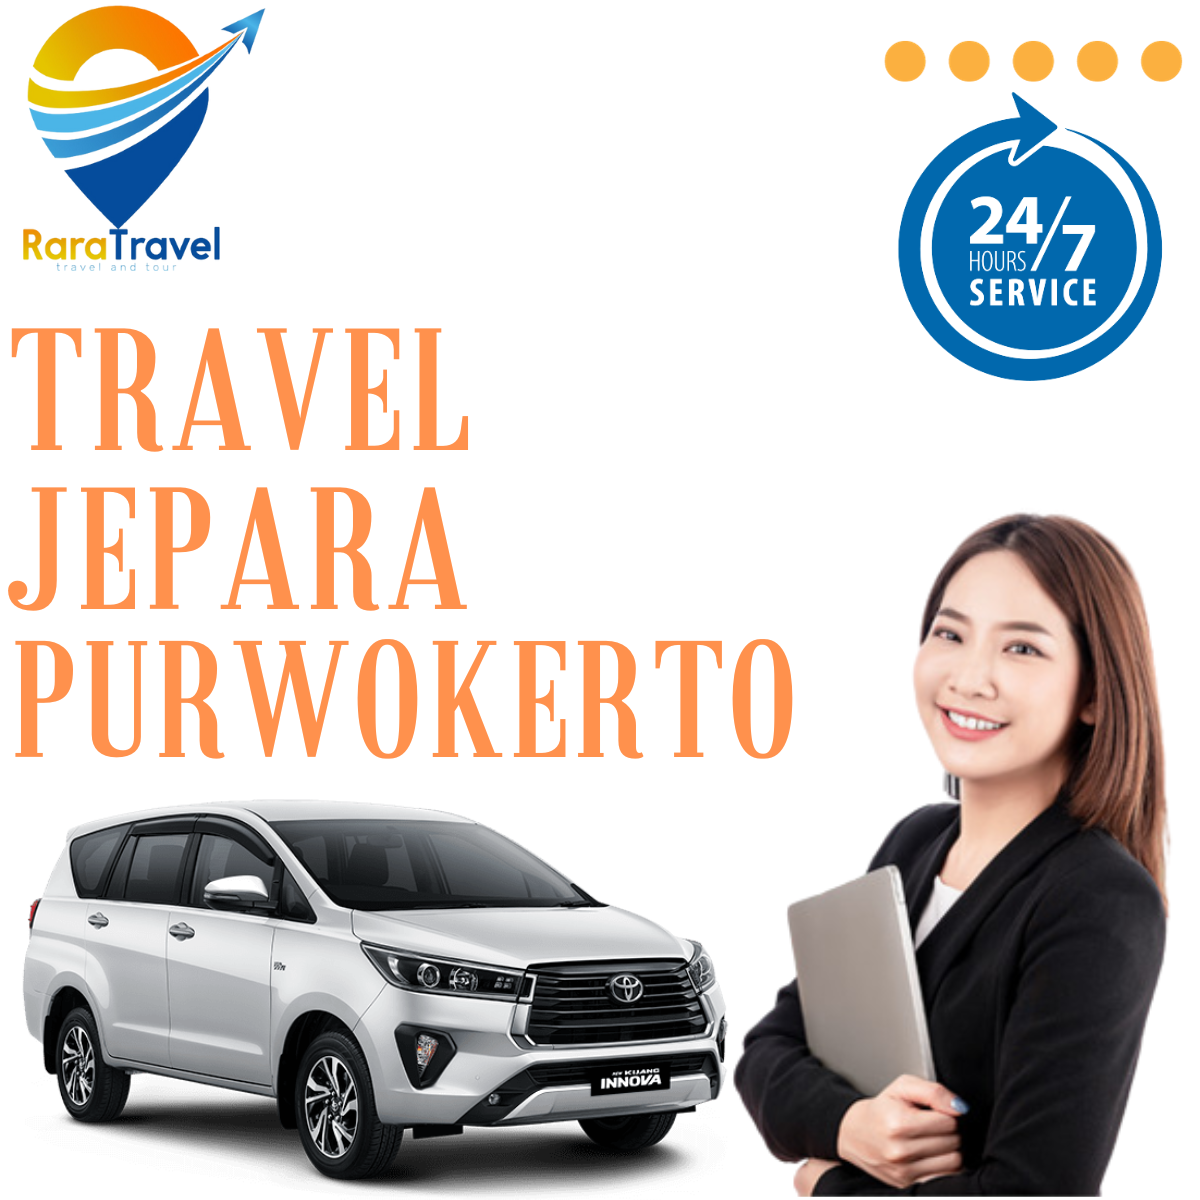 Travel Jepara Purwokerto PP Harga Tiket Murah Fasilitas dan Layanan 24 Jam